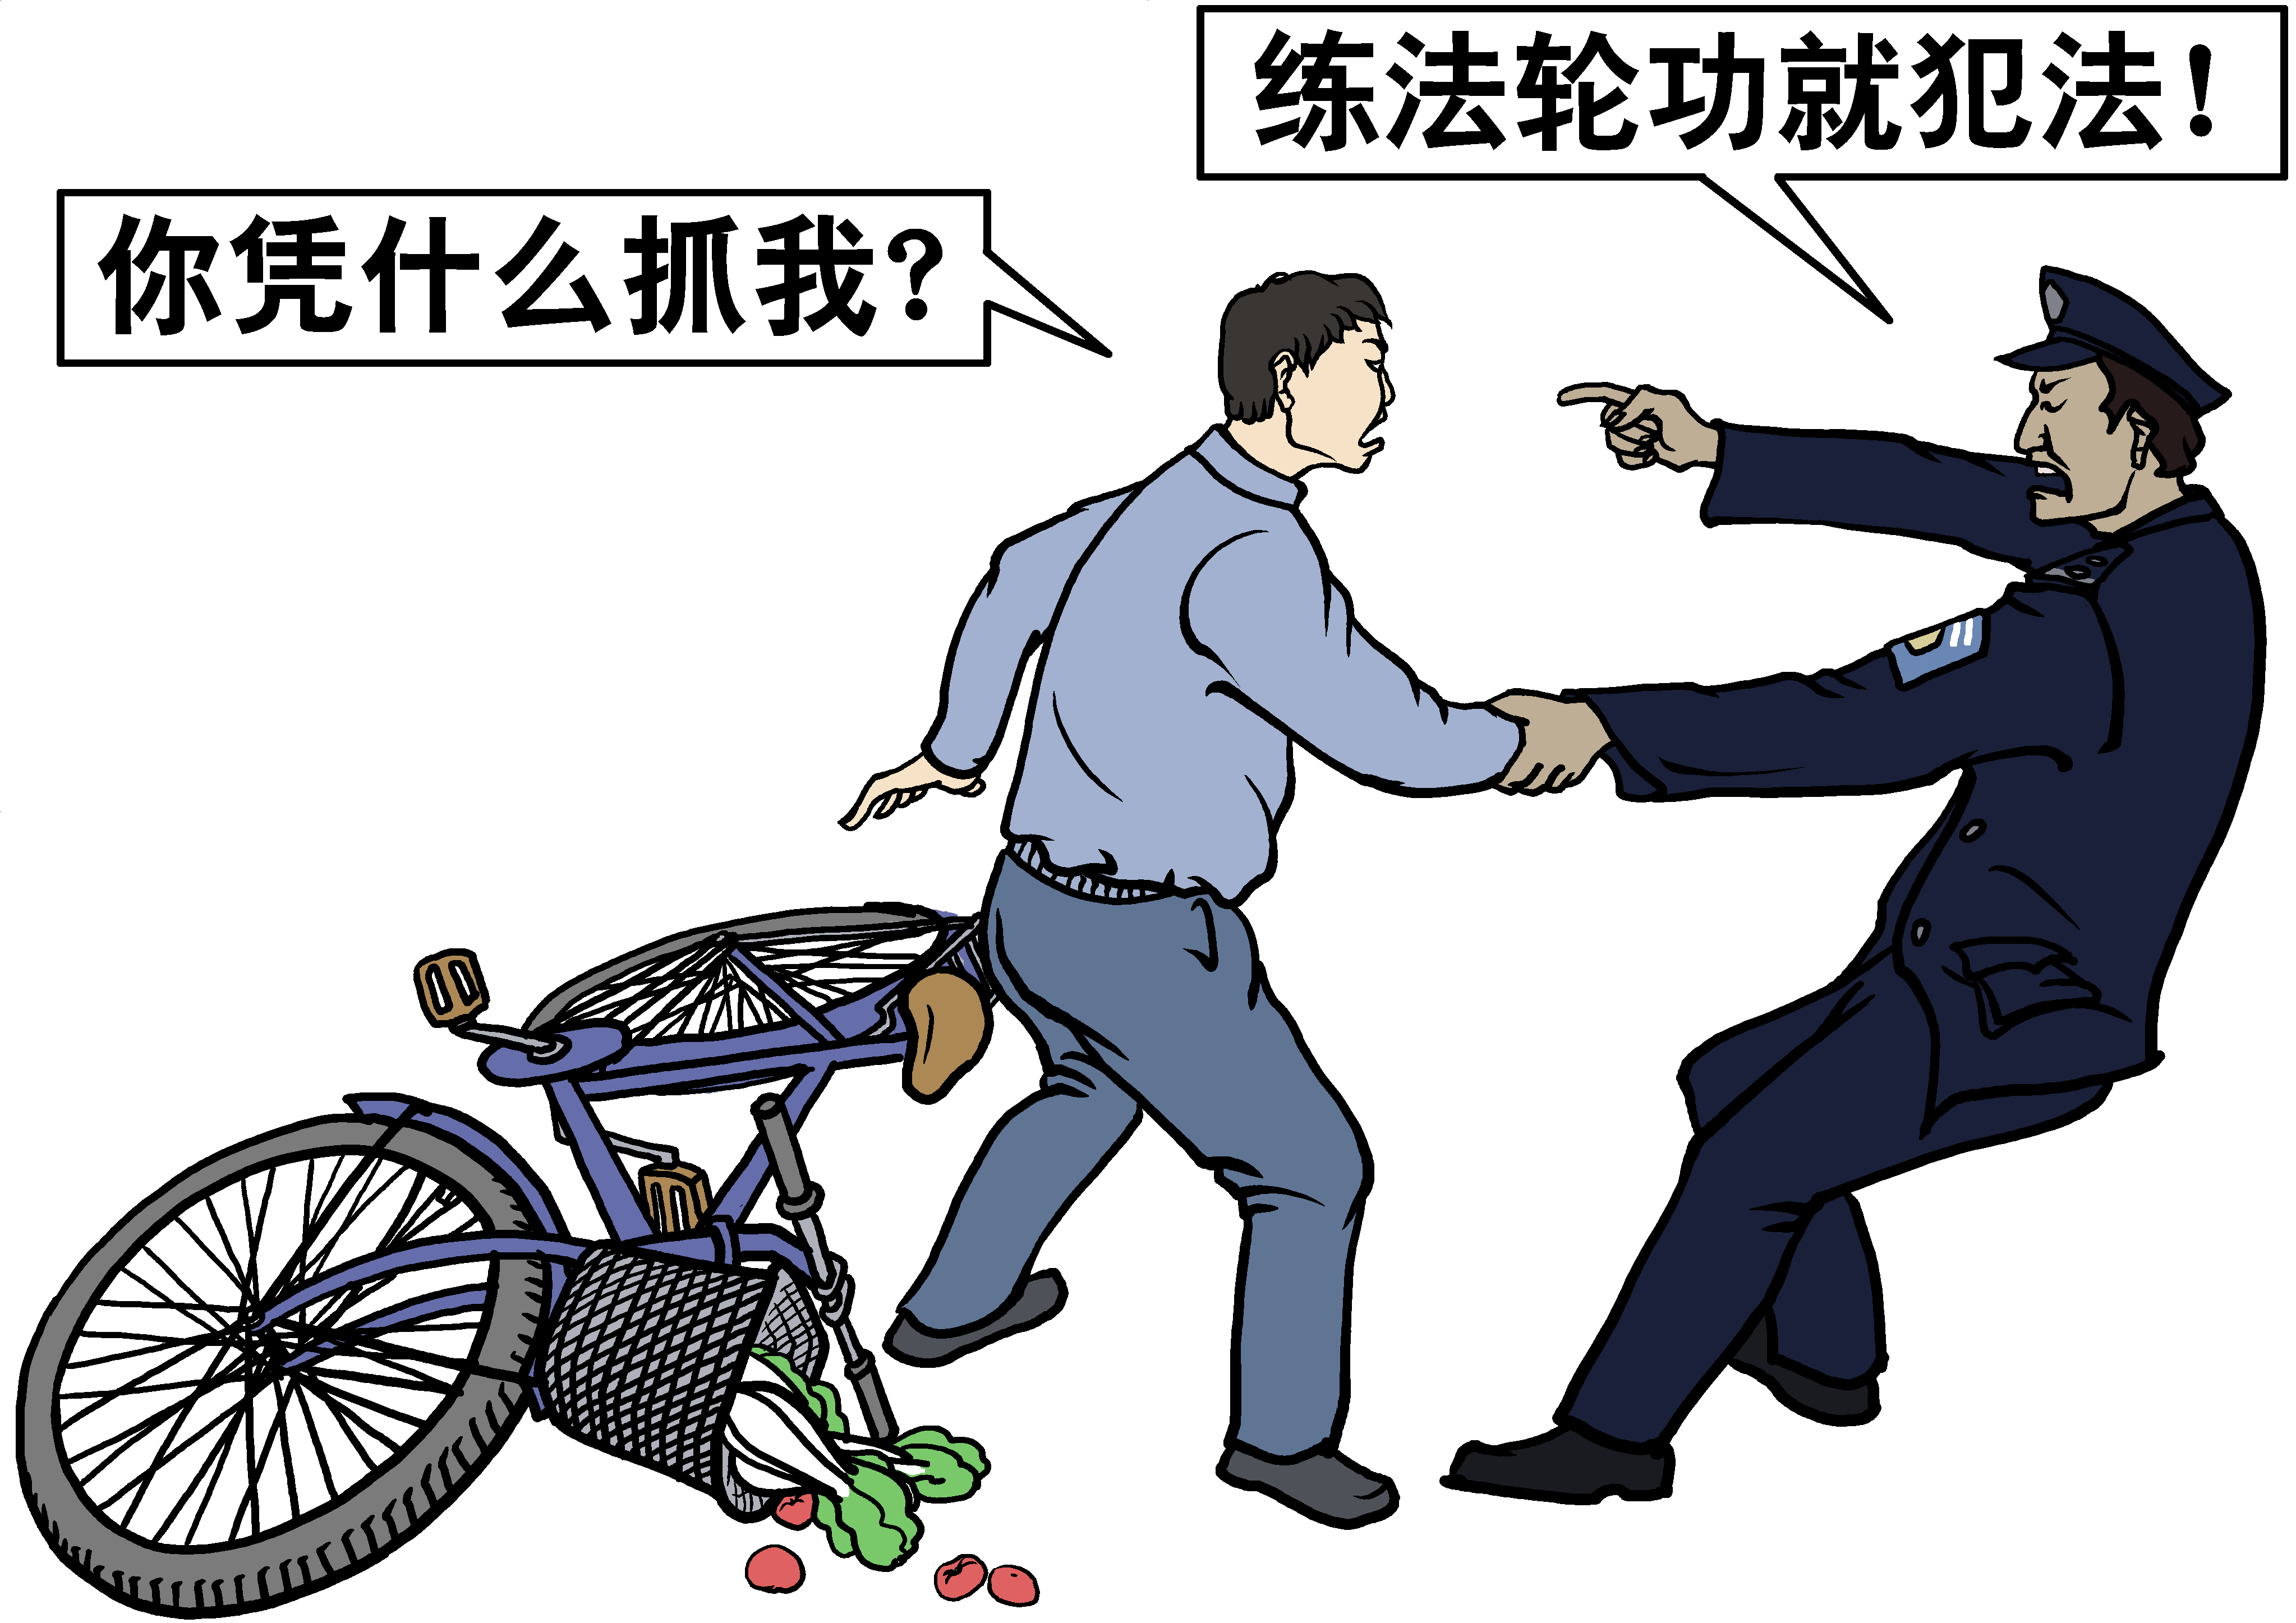 Image result for 绑架 大纪元